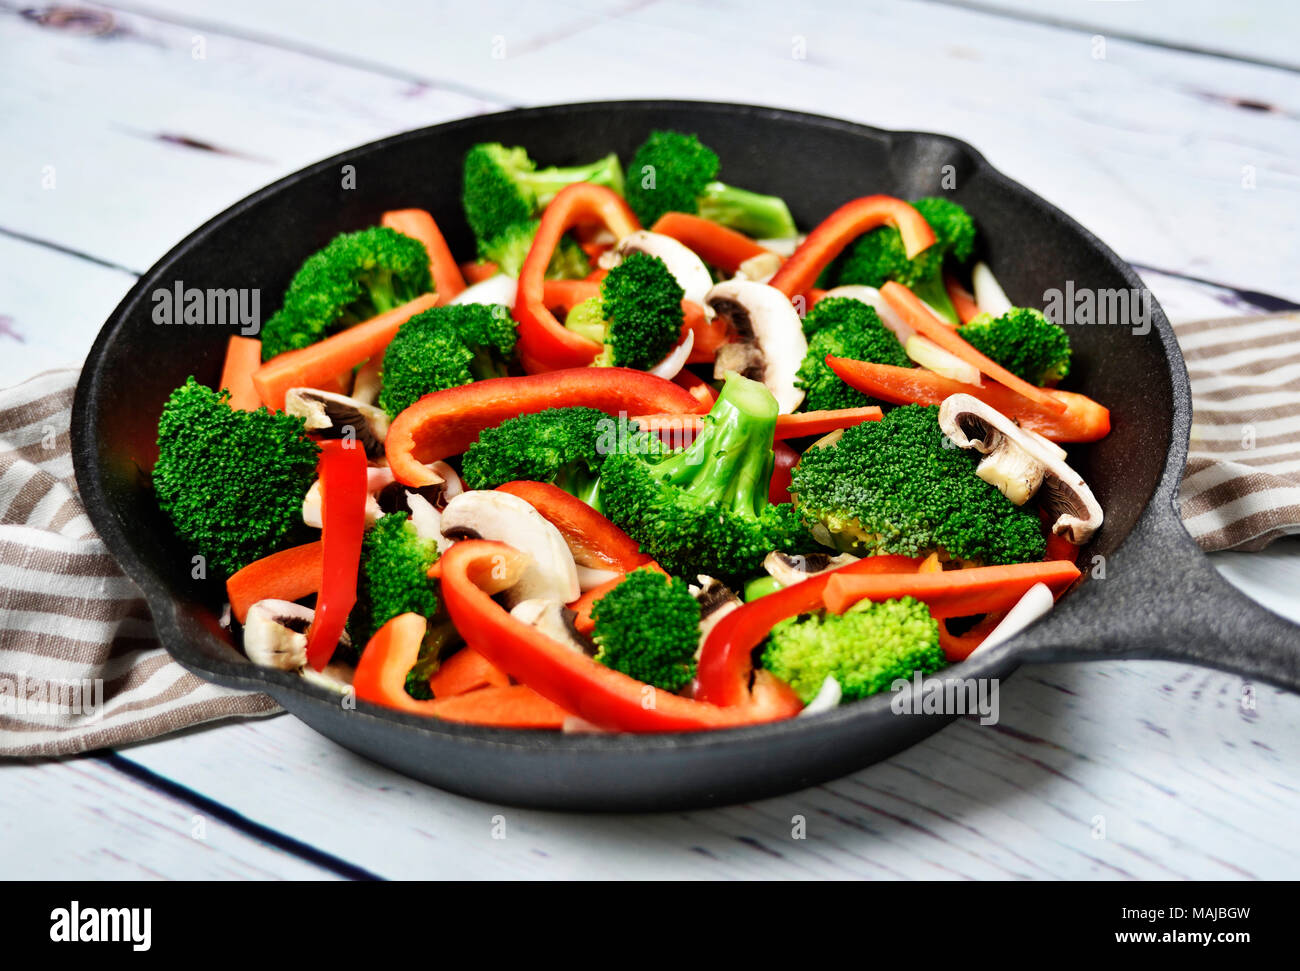 Gesunde Ernährung mit Gemüse in eine eiserne Pfanne oder Topf kochen.  Brokkoli, rote Paprika, Möhren und Champignons Stockfotografie - Alamy